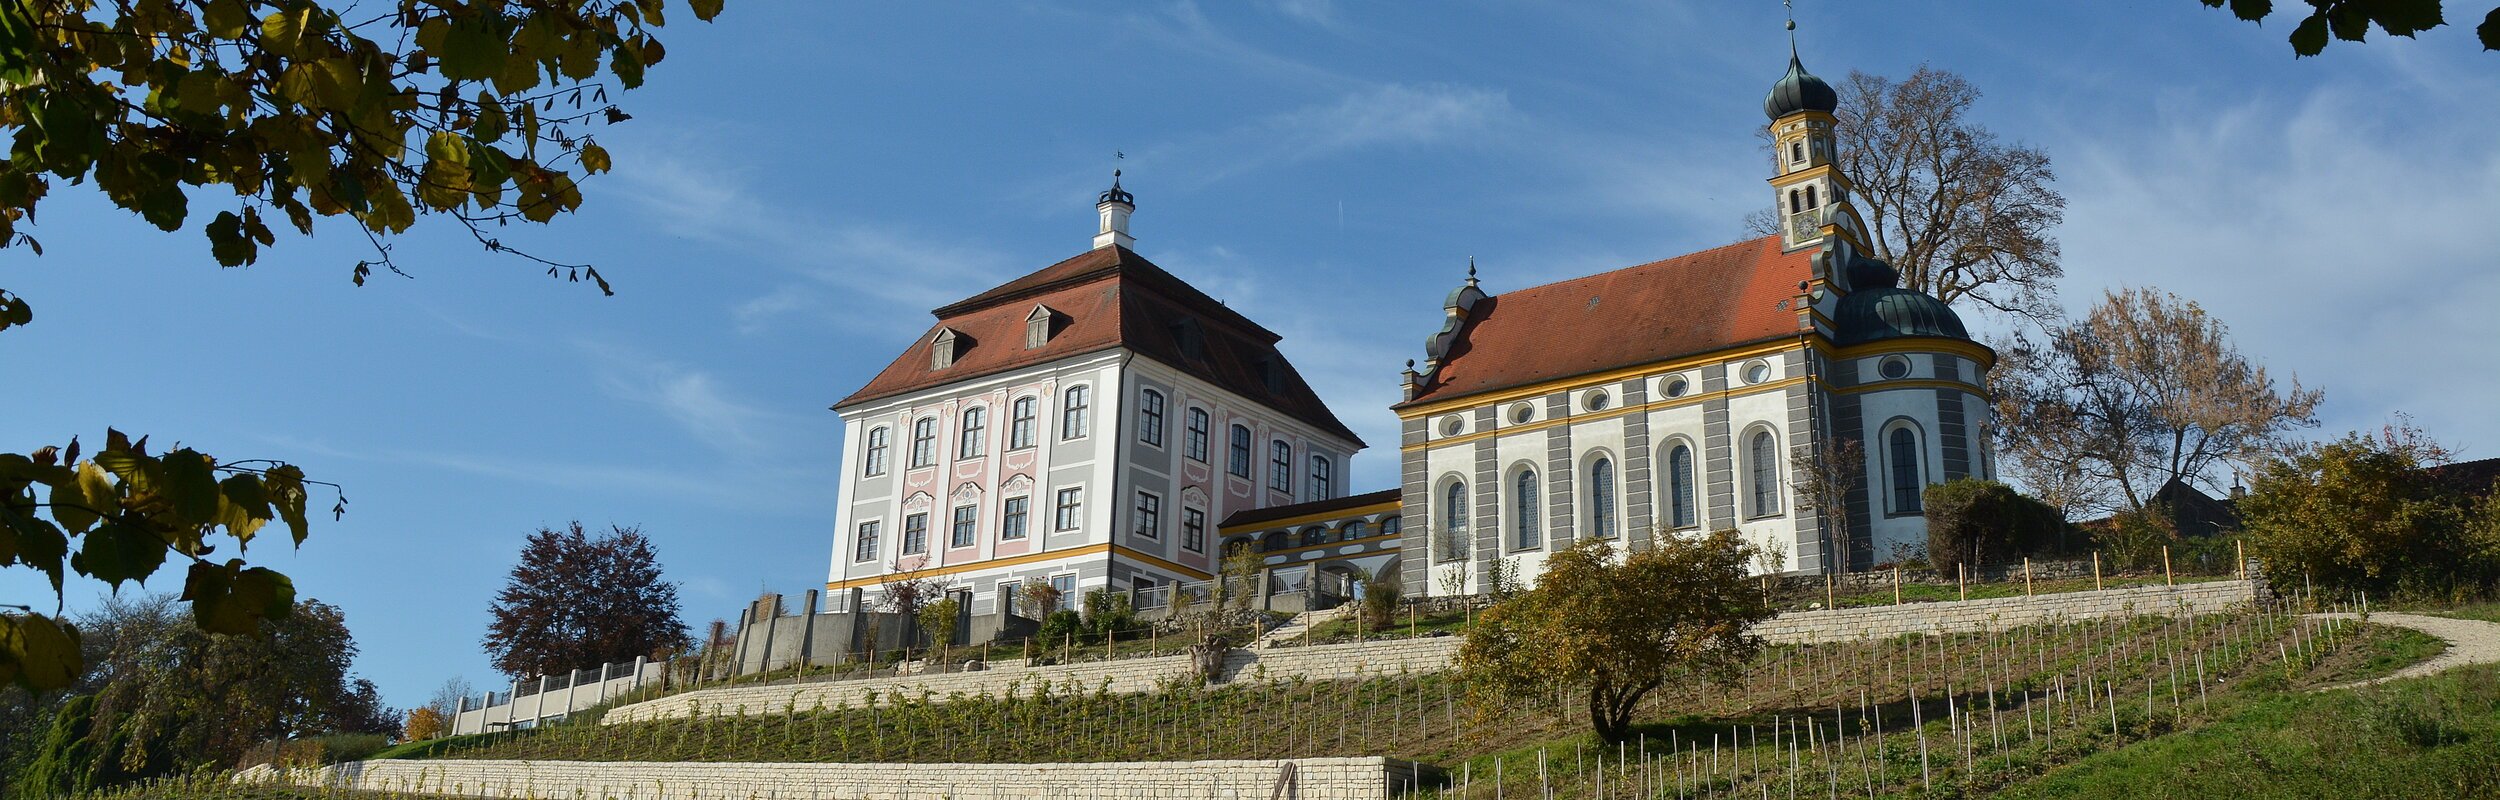 Panoramablick auf Schloss Leitheim